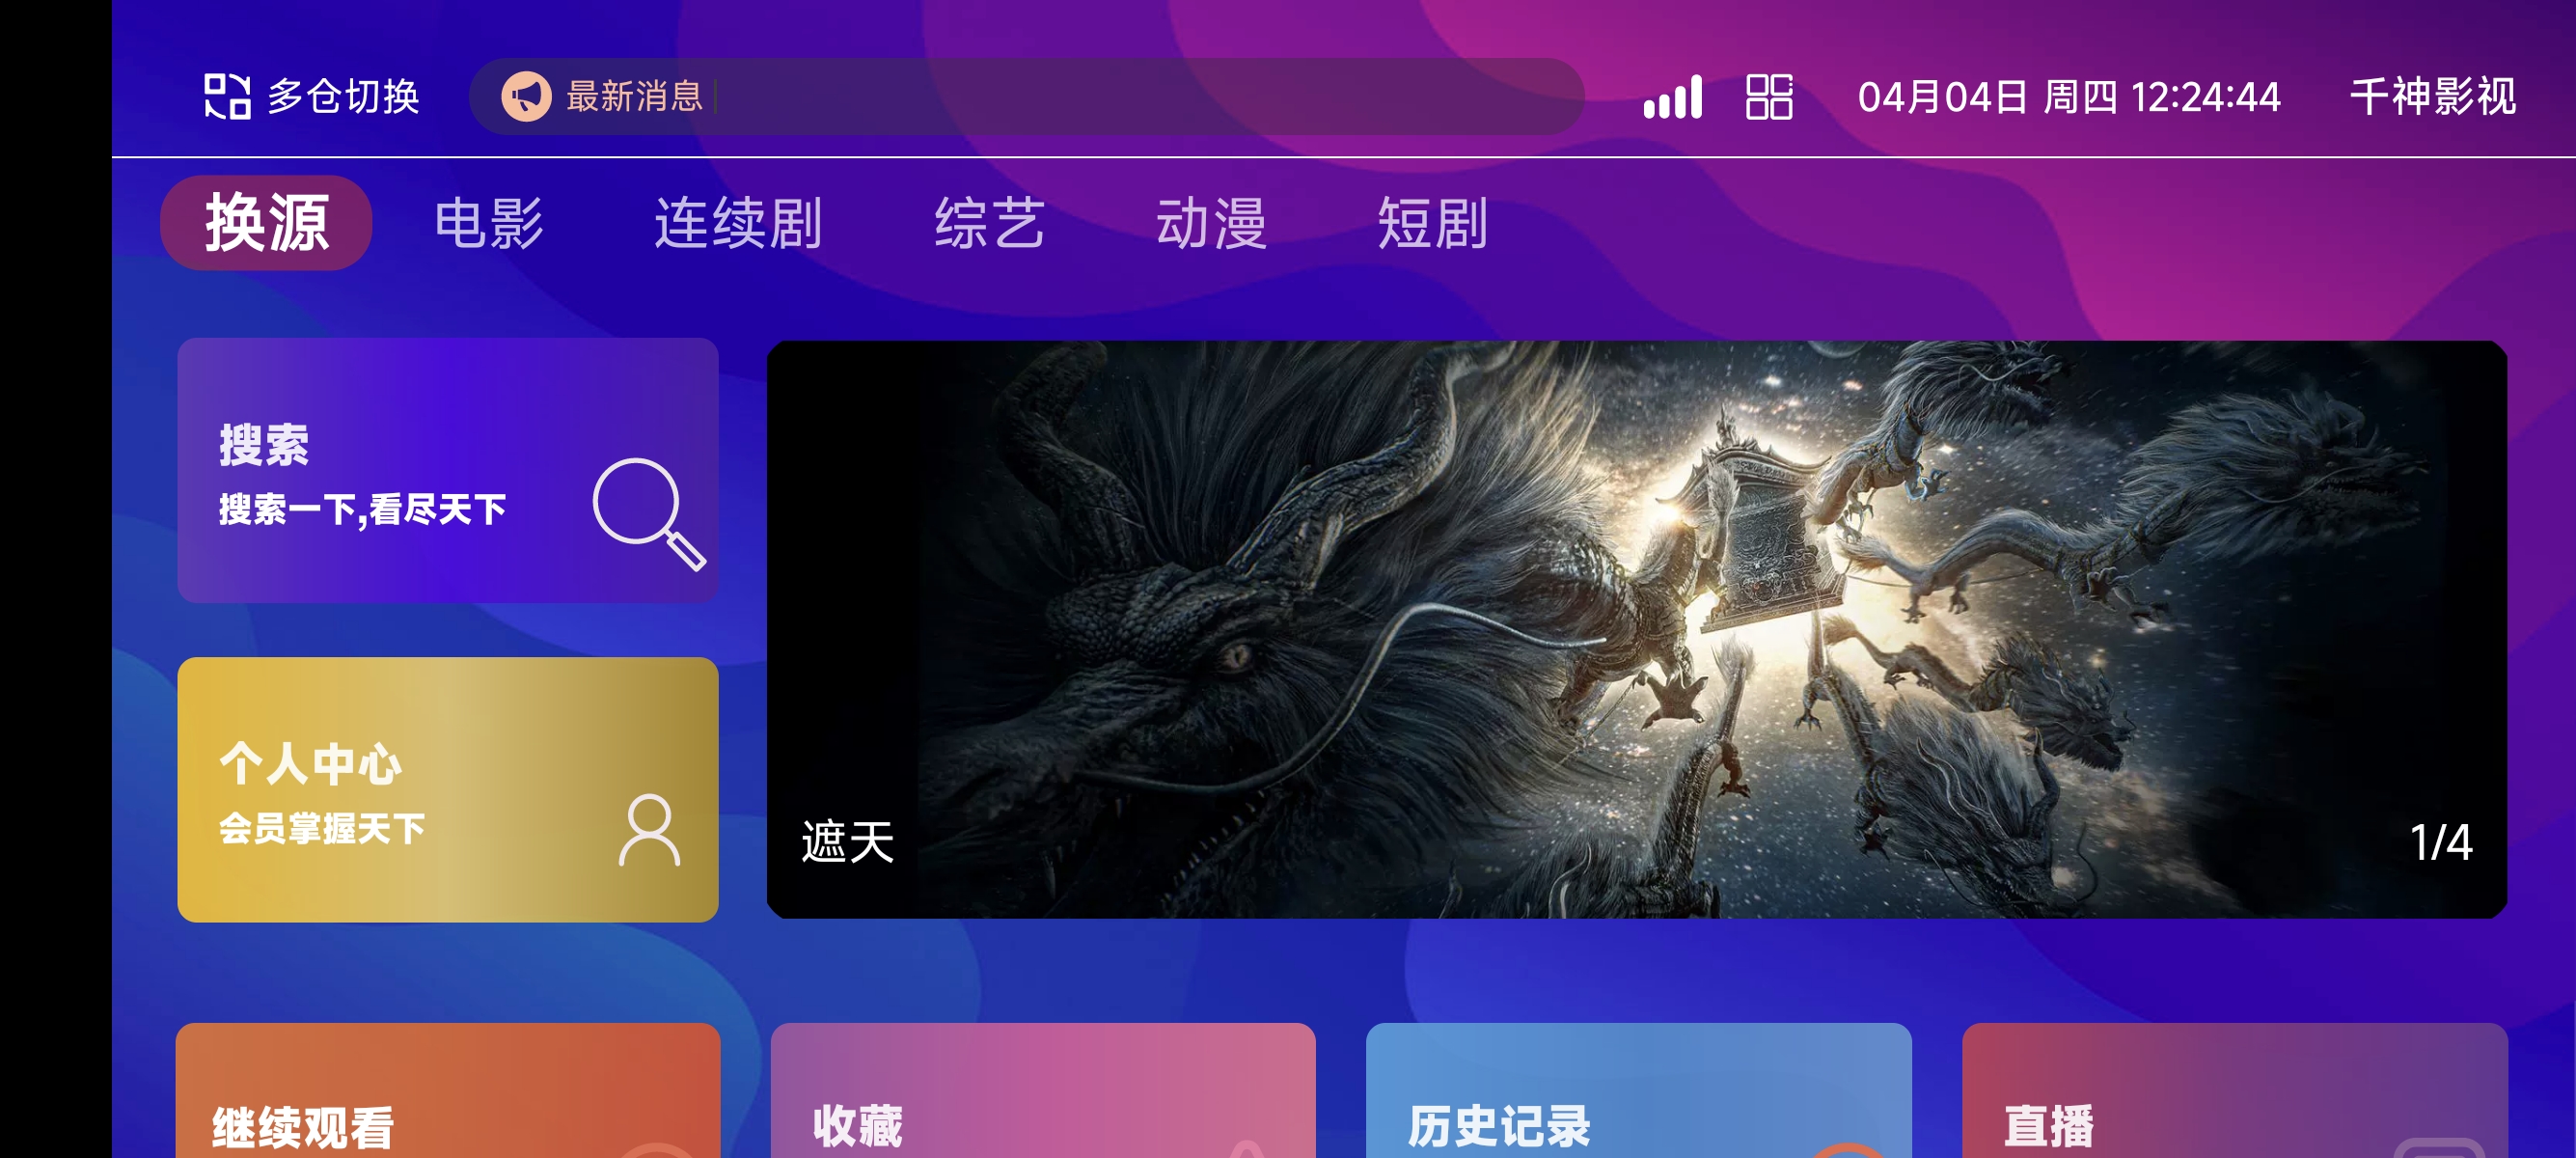 TVBox二次开发影视系统酷点1.4.4